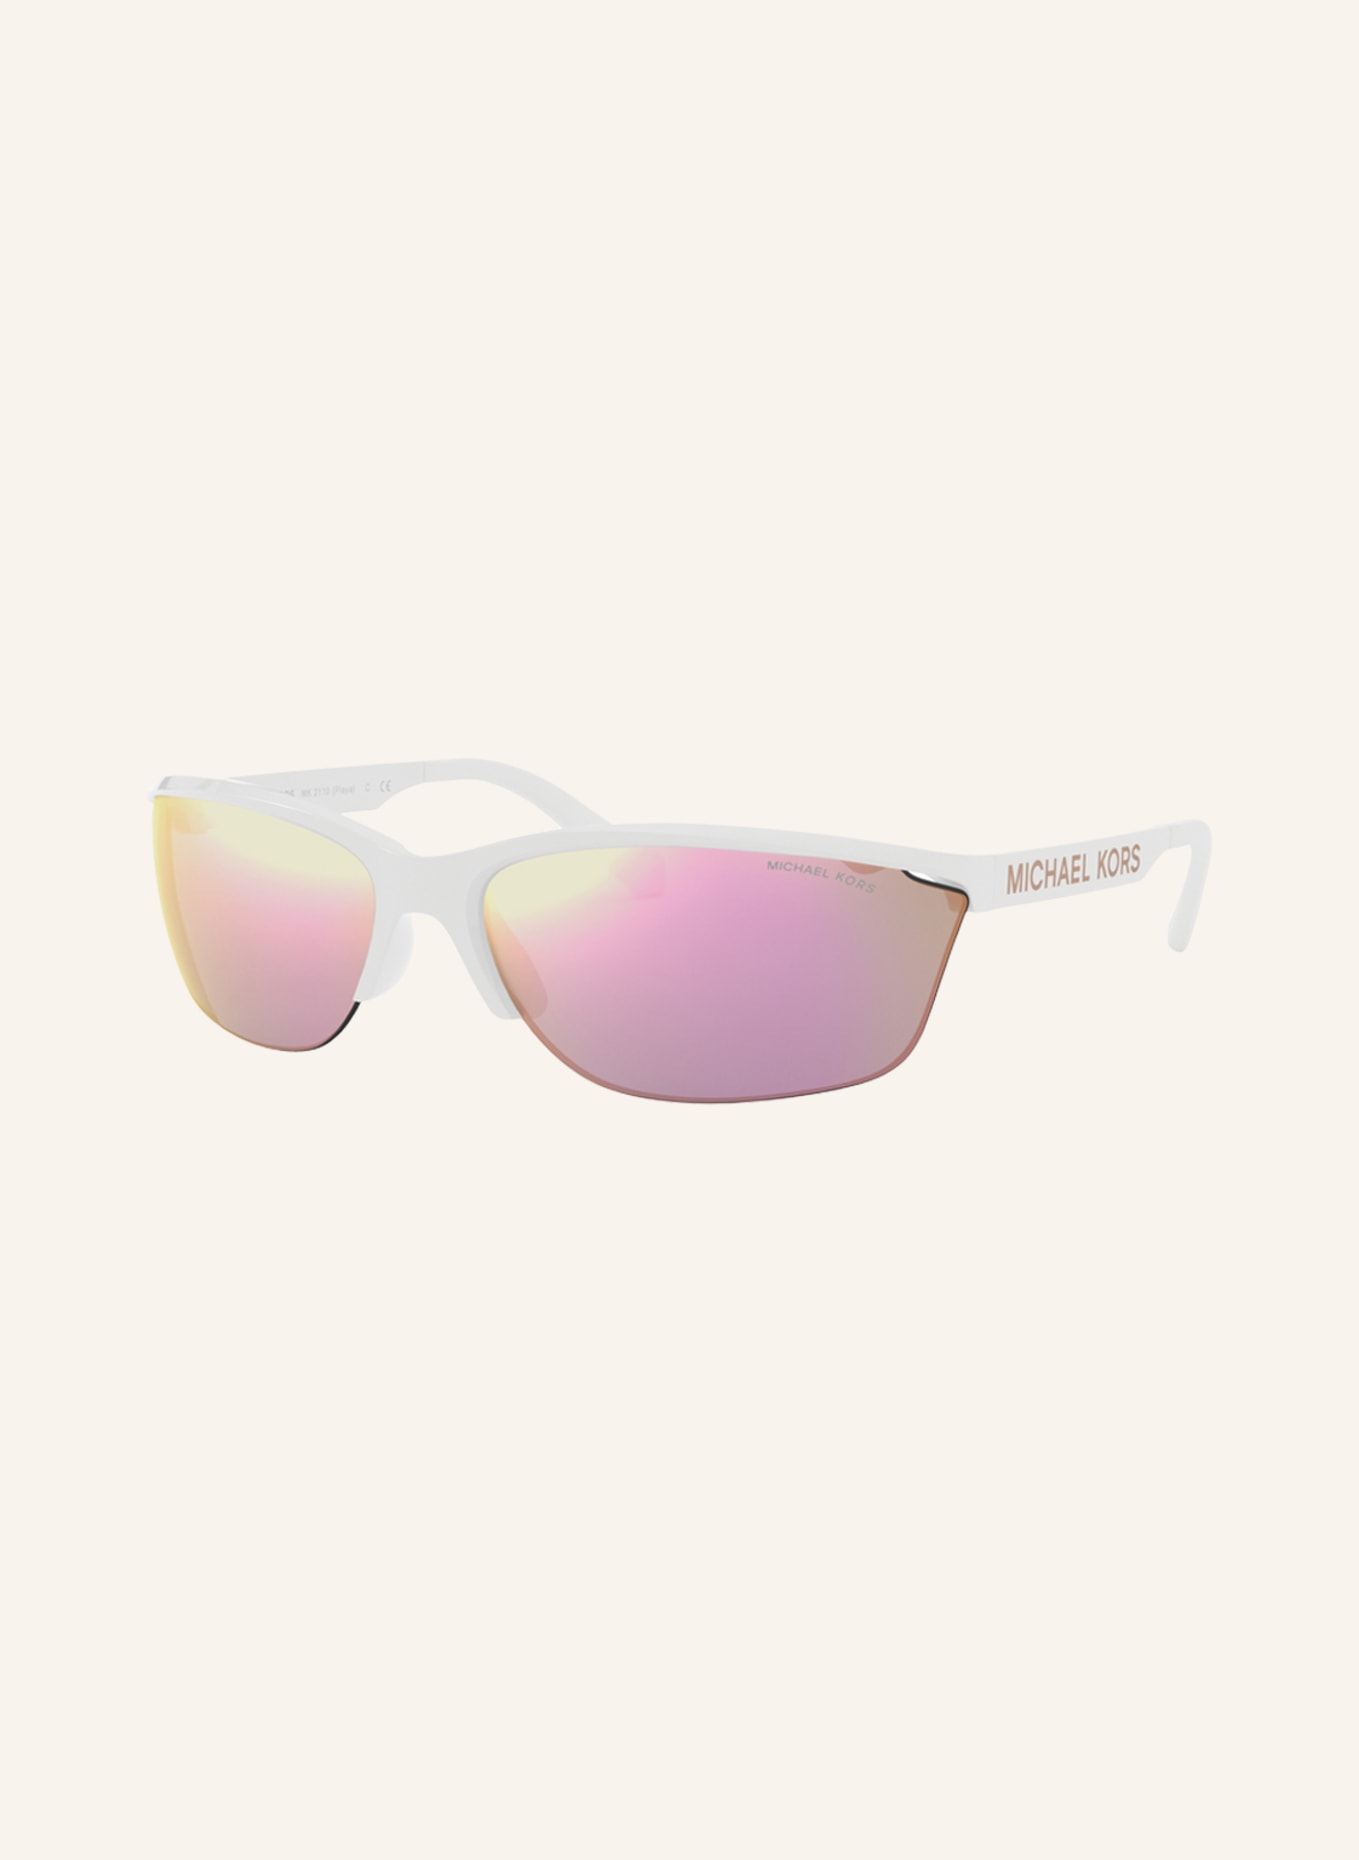 MICHAEL KORS Sonnenbrille MK2110 , Farbe: 30994Z  - WEISS/ PINK VERSPIEGELT (Bild 1)